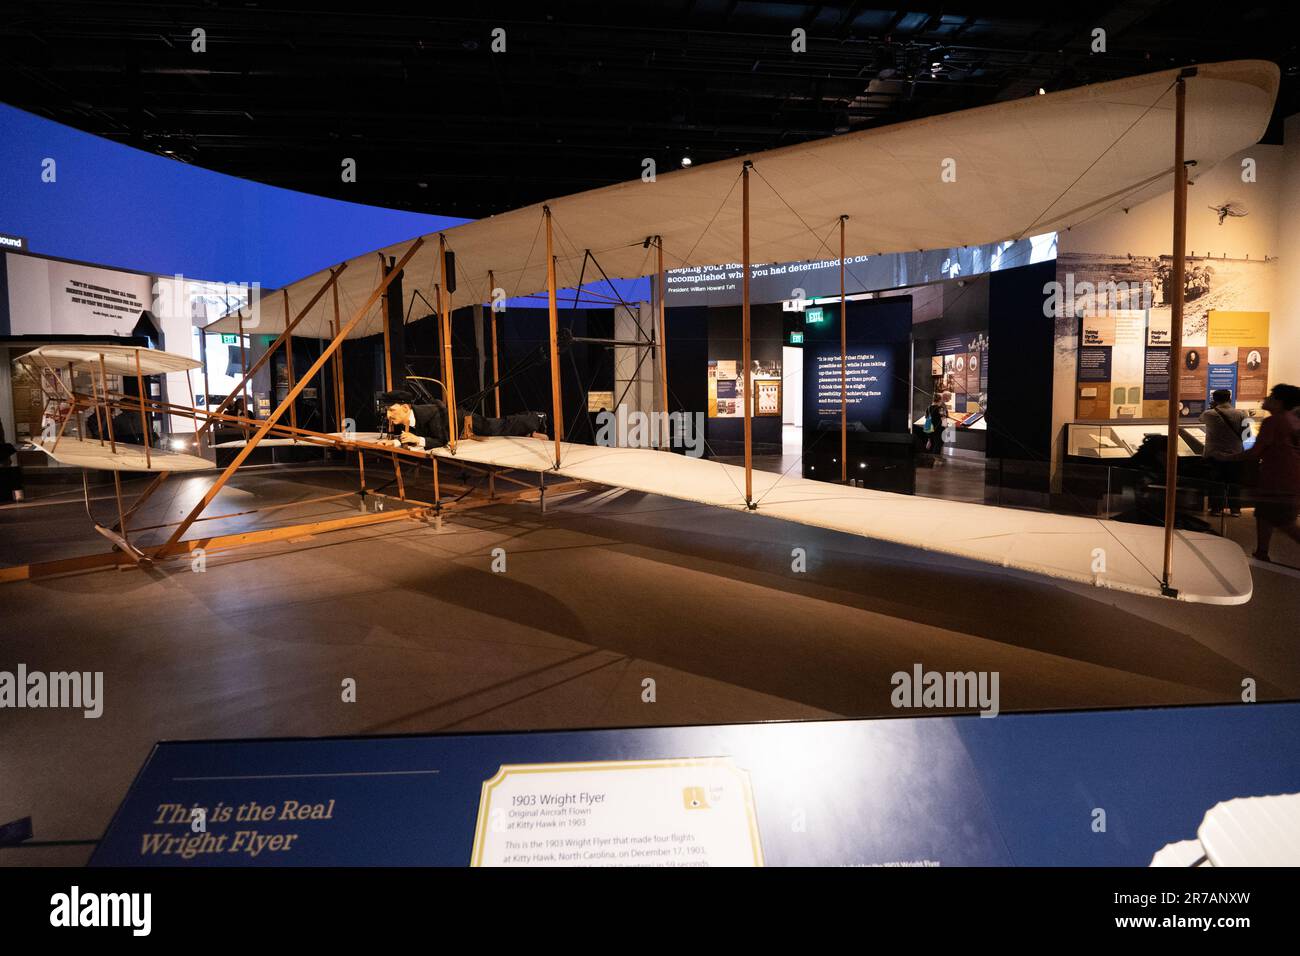 The Wright Flyer (Kitty Hawk, Flyer 1, 1903 Flyer) au Musée national de l'air et de l'espace de Washington, D.C.photo : garyroberts/worldwidefeatures.com Banque D'Images